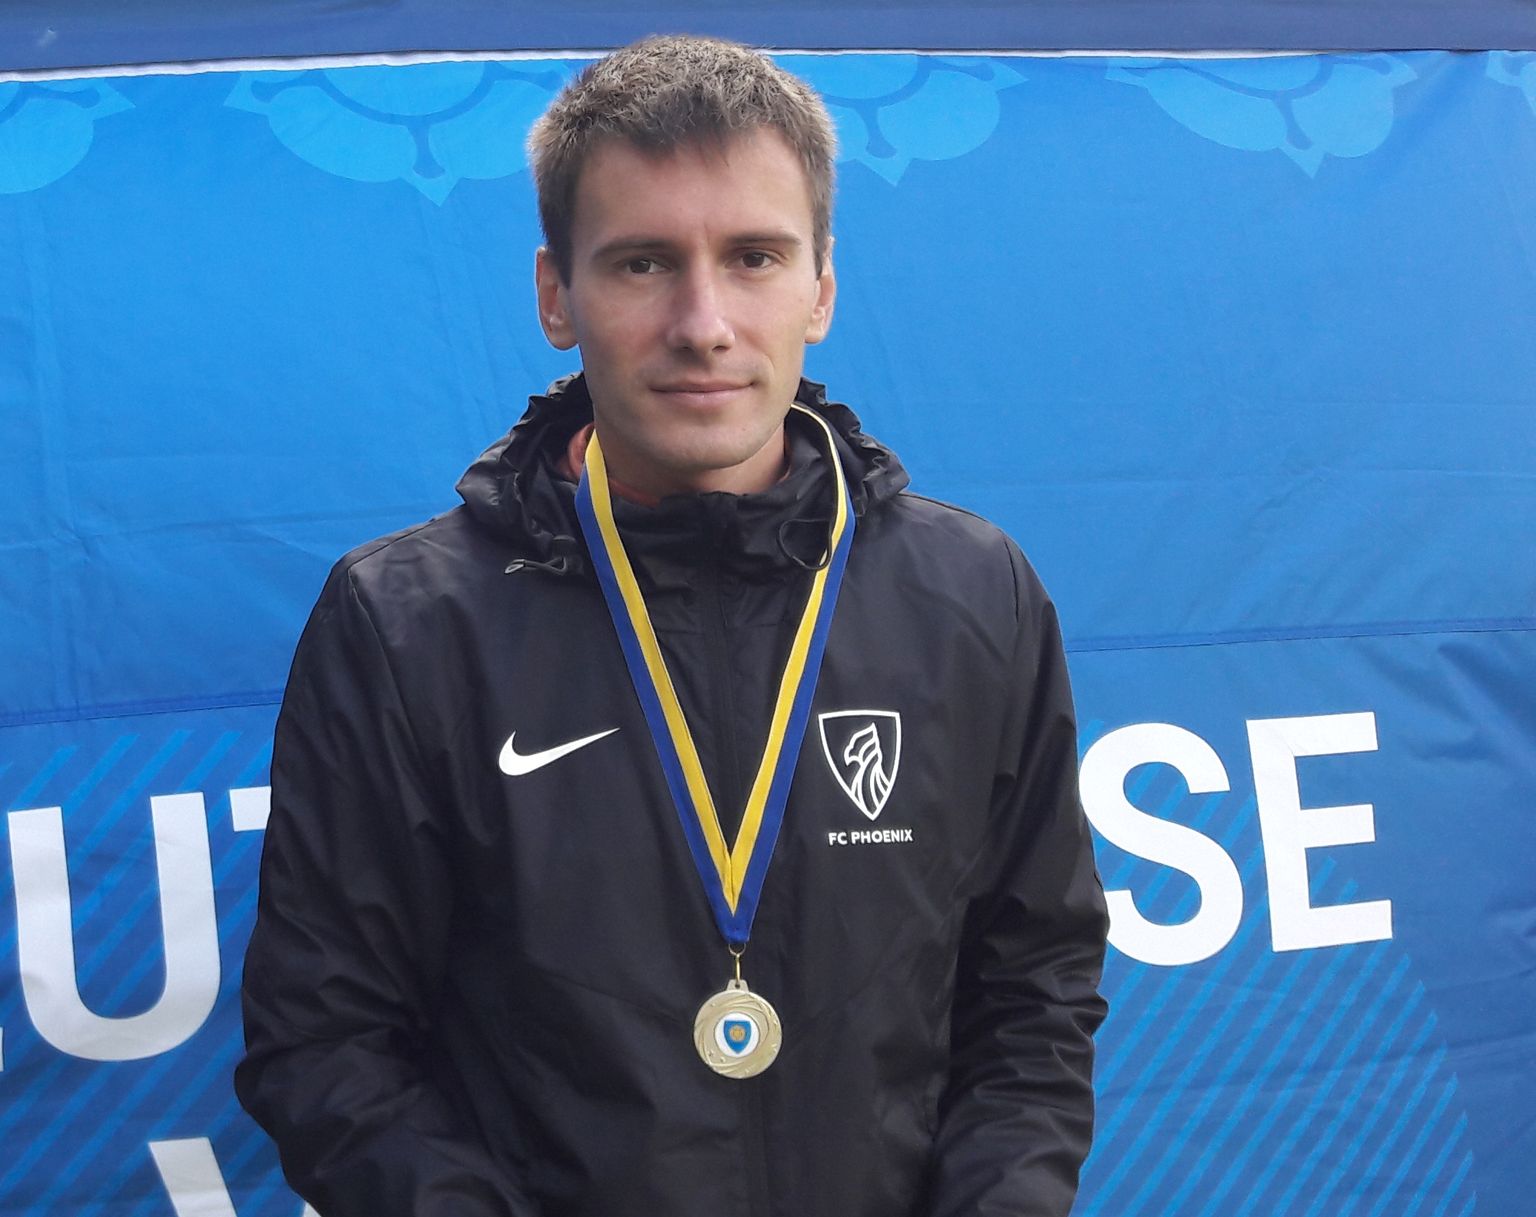 Лучший стайер Ида-Вирумаа Дмитрий Аристов в этом году завоевал на чемпионатах Эстонии две бронзовые медали.